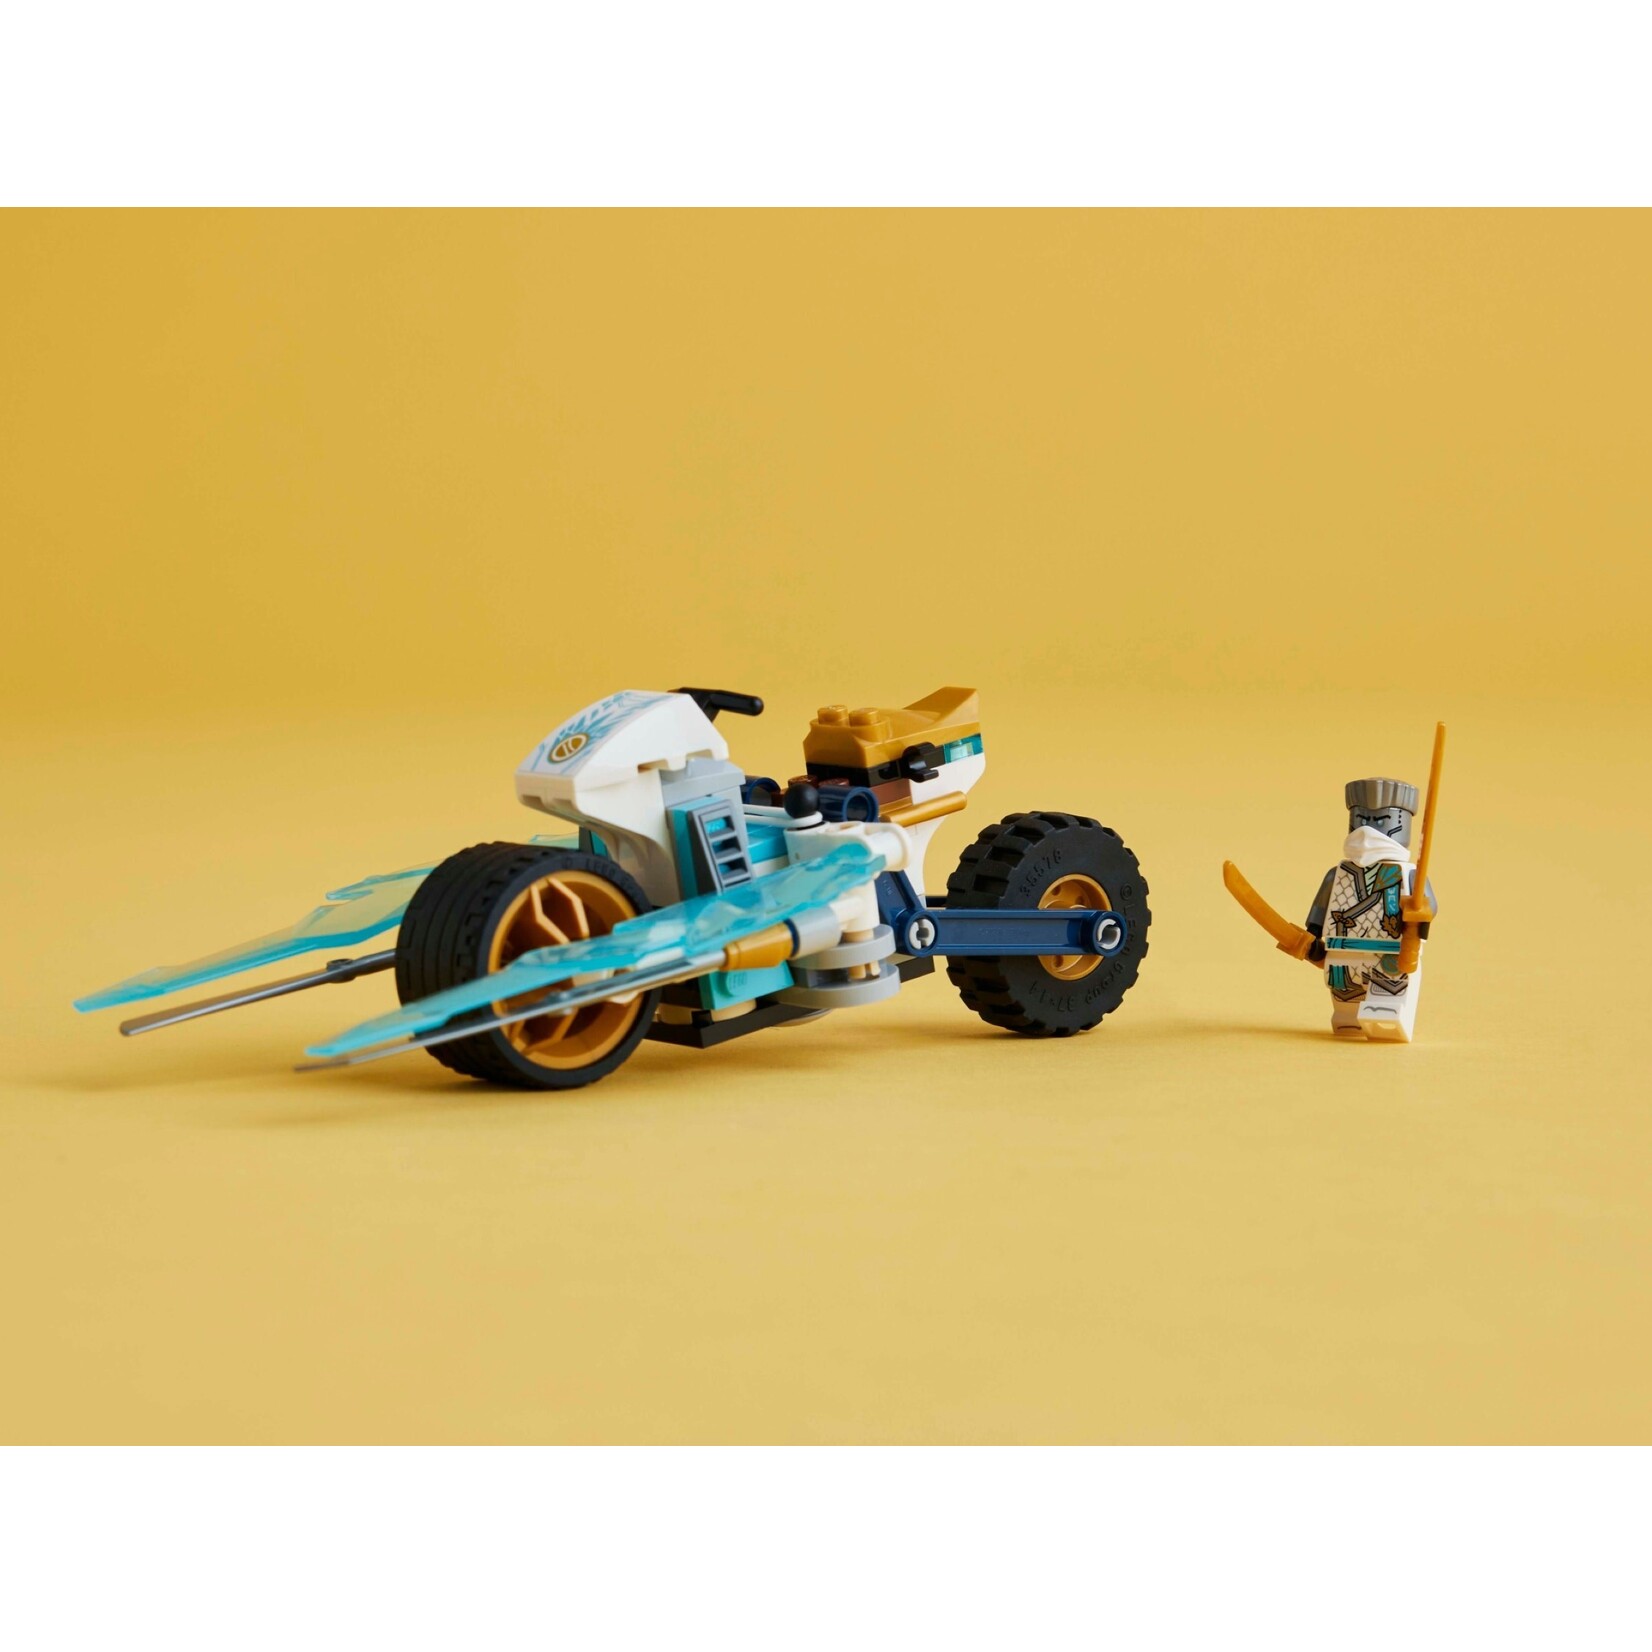 LEGO Zane's ijsmotor - 71816